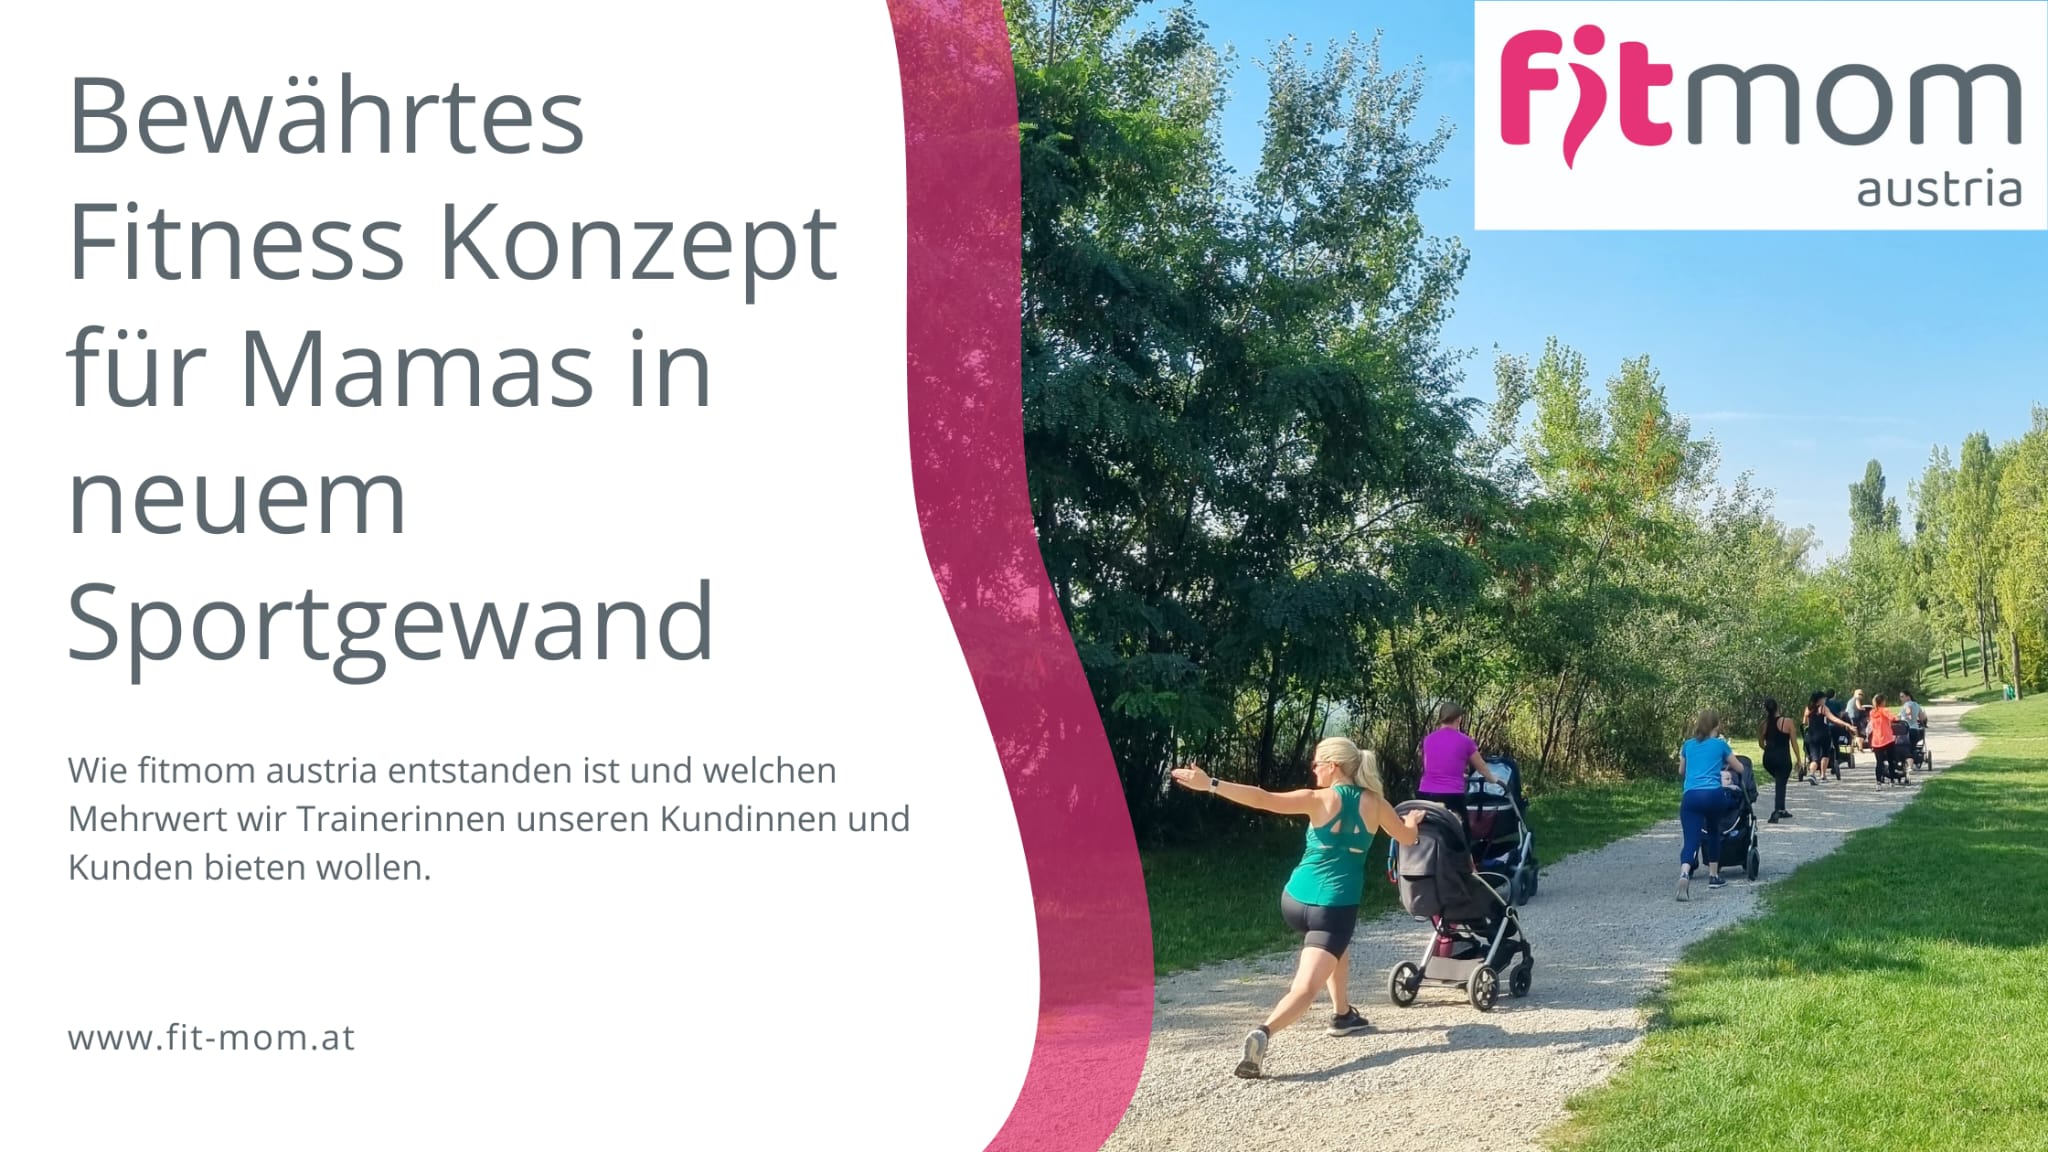 fitmom austria - bewährtes Fitness Konzept für Mamas in neuem Sportgewand (Einleitungsbild)